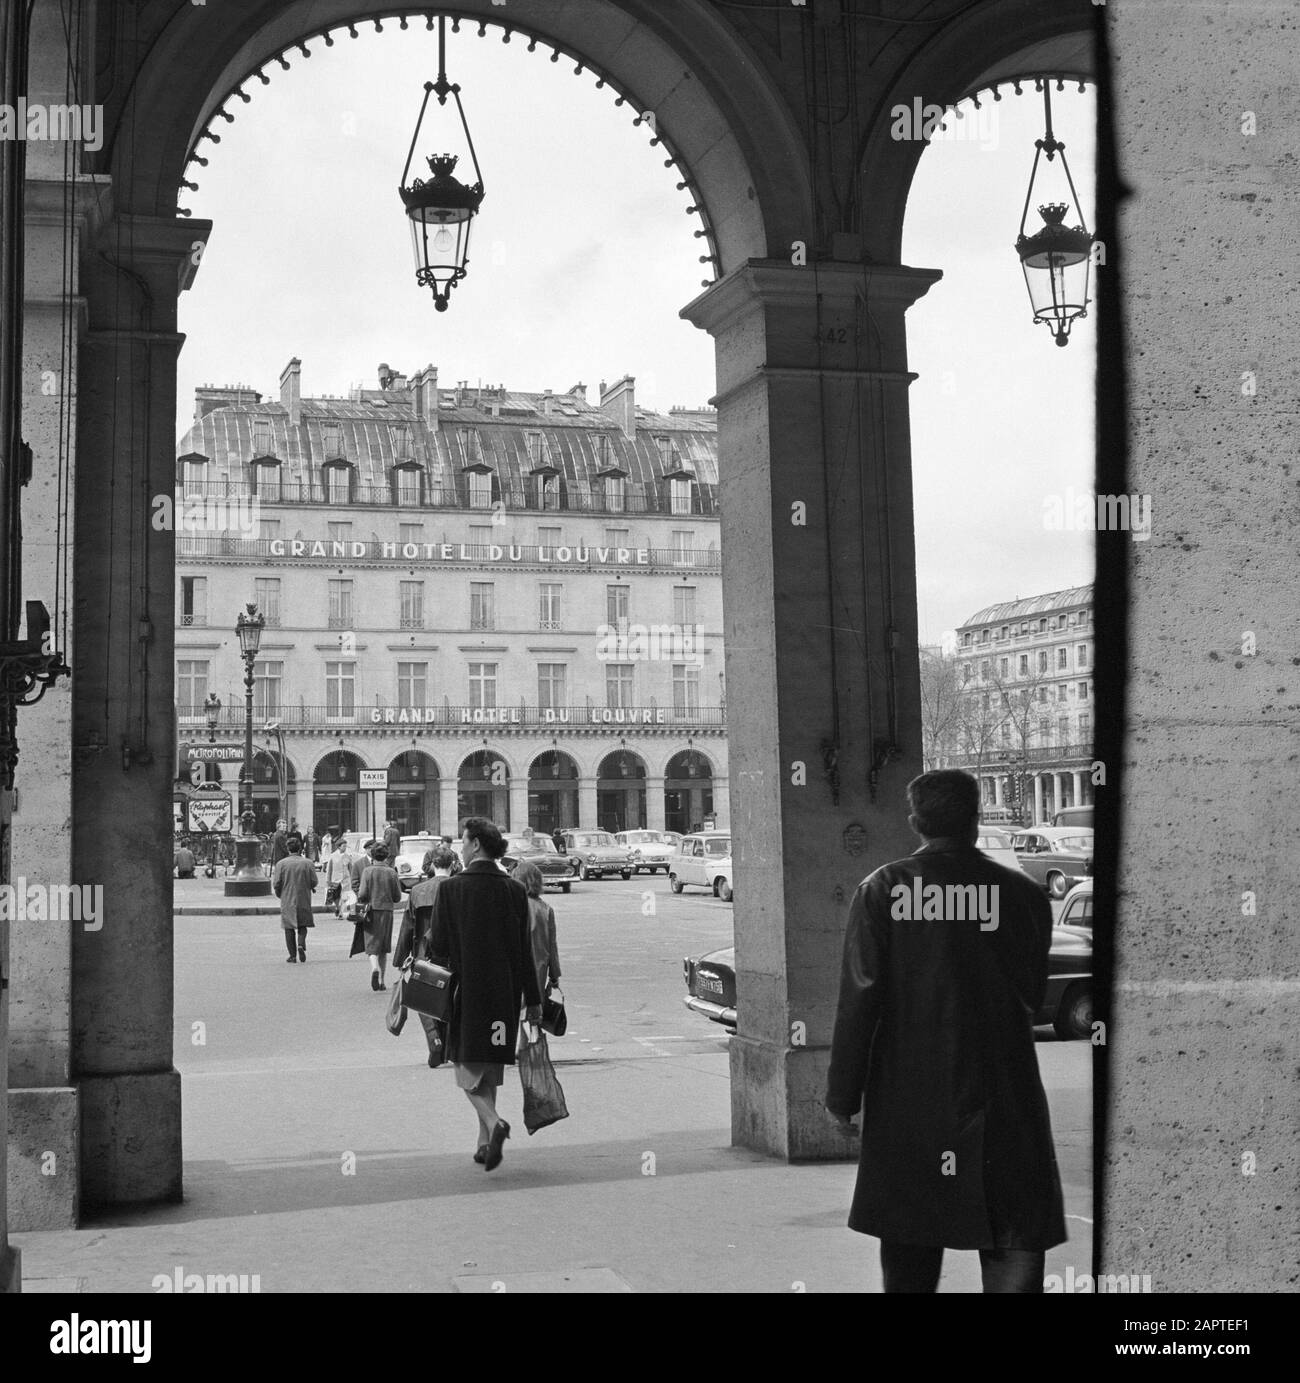 Pariser Bilder [Das Straßenleben von Paris] Grand Hôtel du Louvre am Place André Malreux Datum: 1965 Ort: Frankreich, Paris Stichwörter: Hotels, Plätze, Straßenbilder Stockfoto